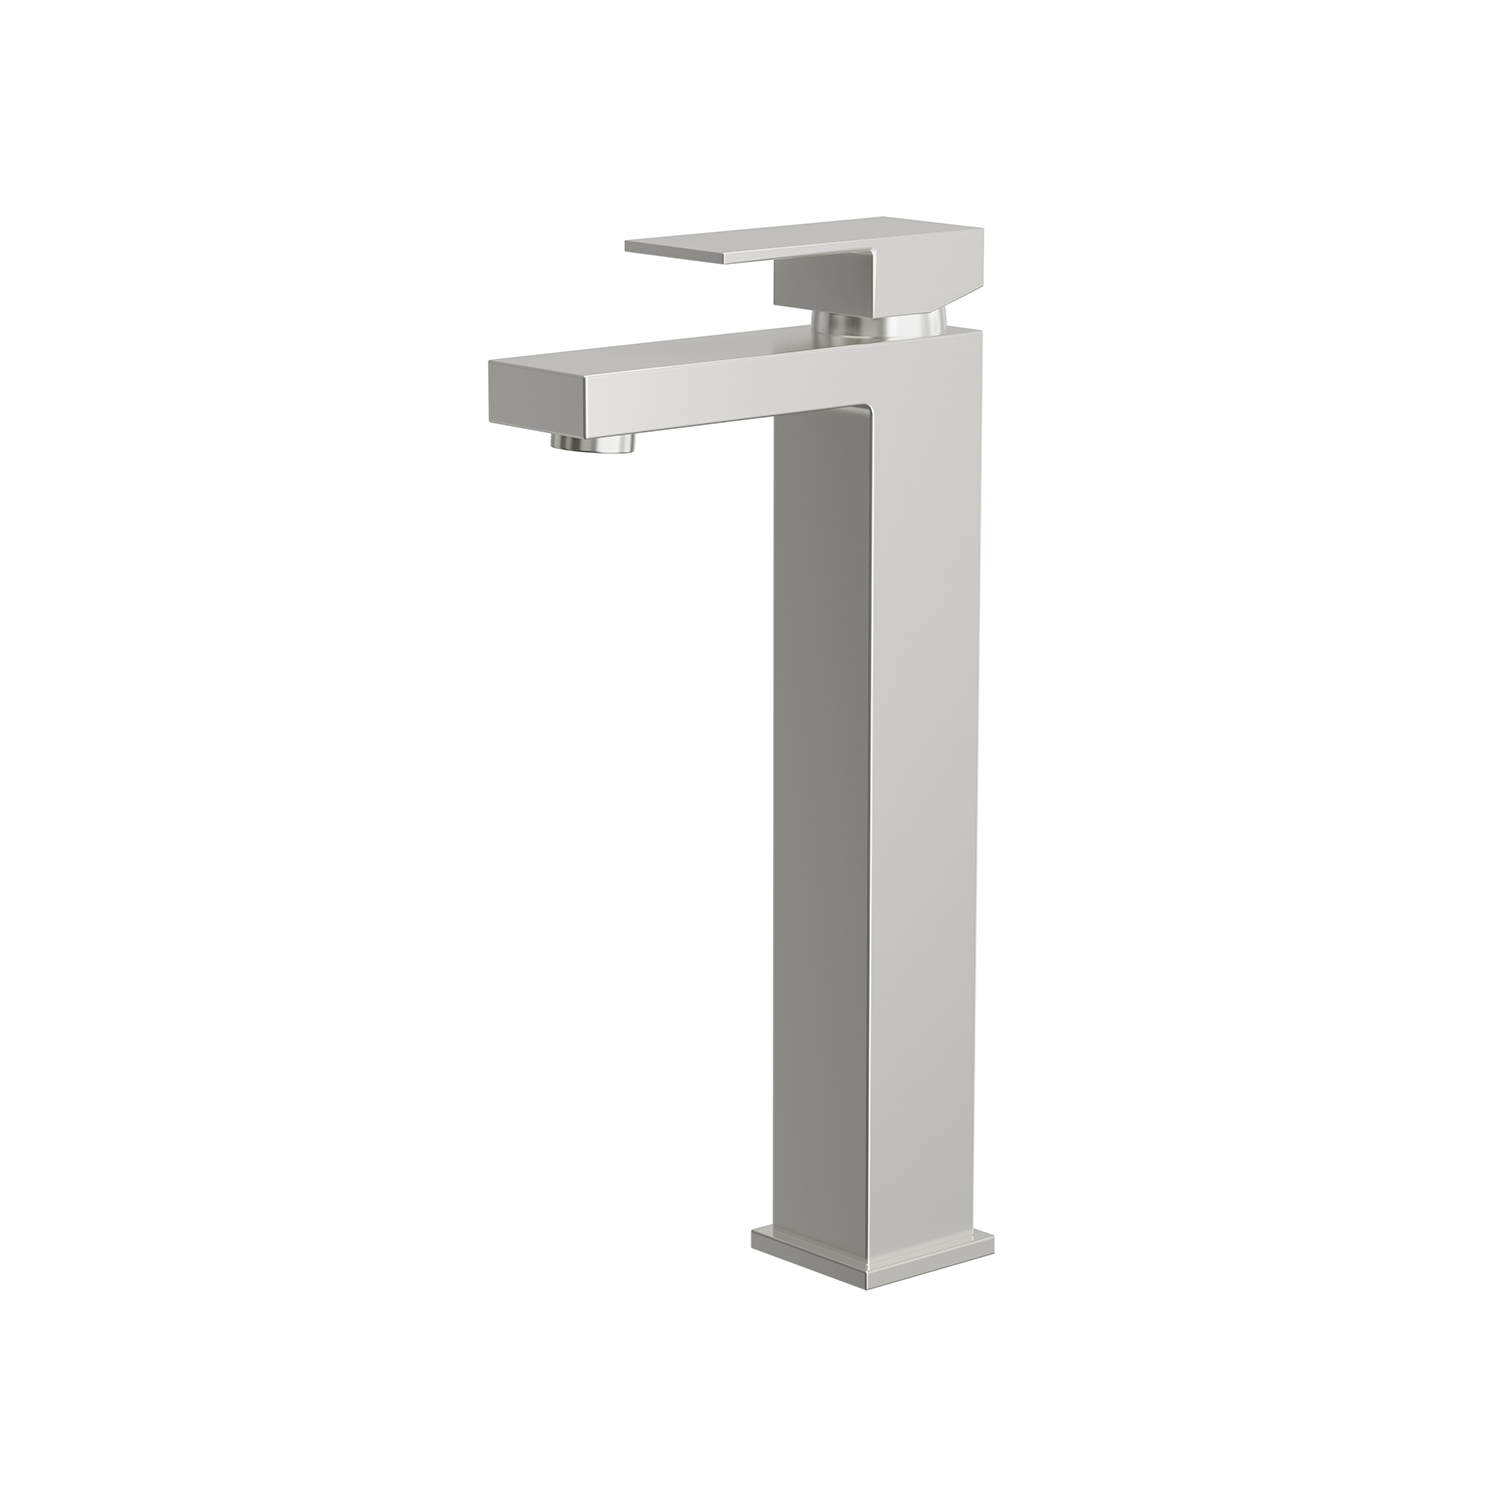 DAX Single Handle Vessel Sink Bathroom Faucet, Brass Body, 6-1/2 x 12 Inches (DAX-6951B)